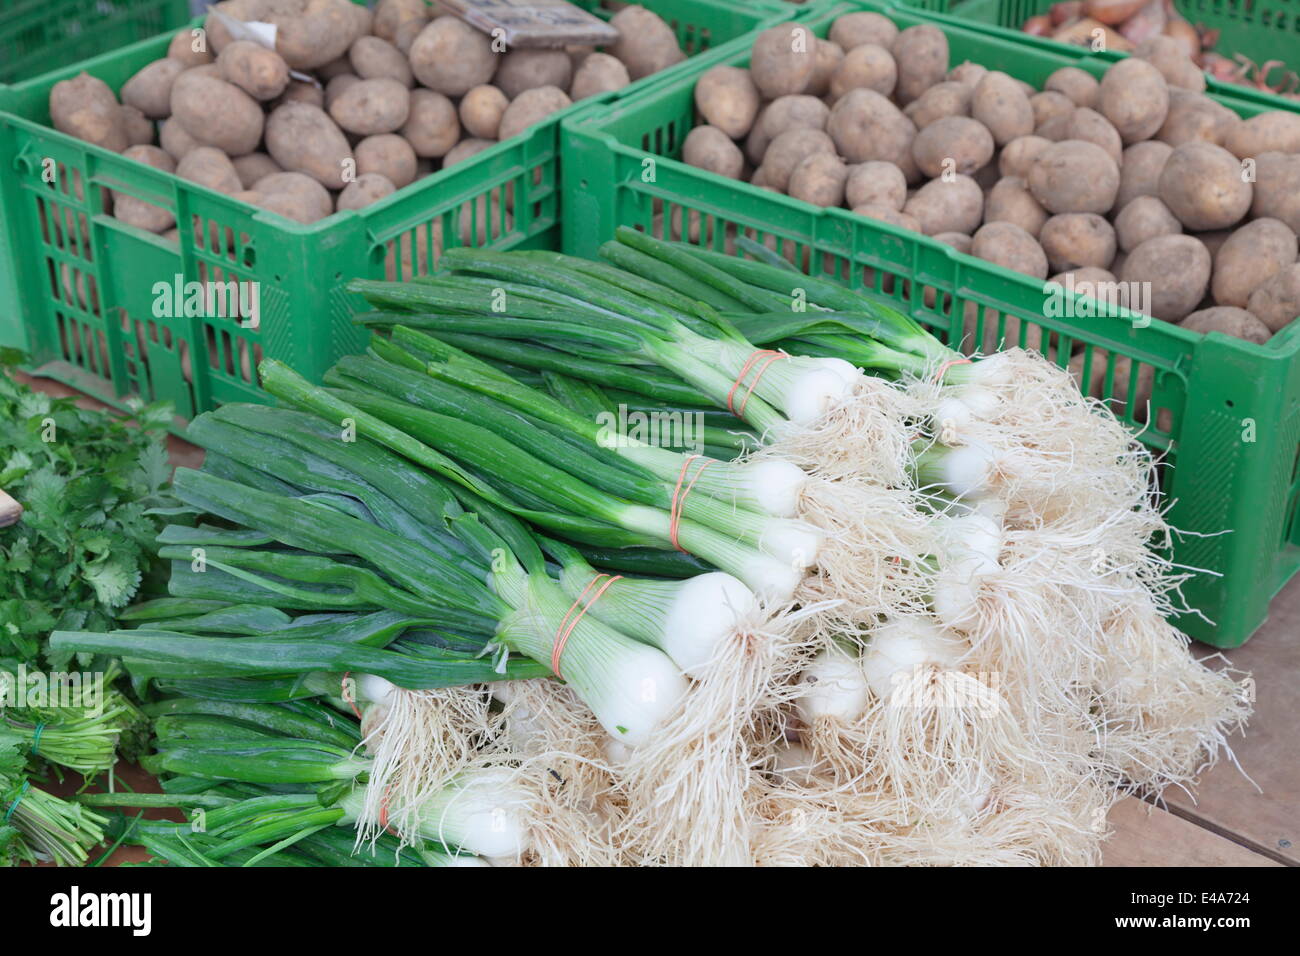 Oignons et pommes de terre à une échoppe de marché, marché hebdomadaire, marché, Esslingen, Baden Wurtemberg, Allemagne, Europe Banque D'Images